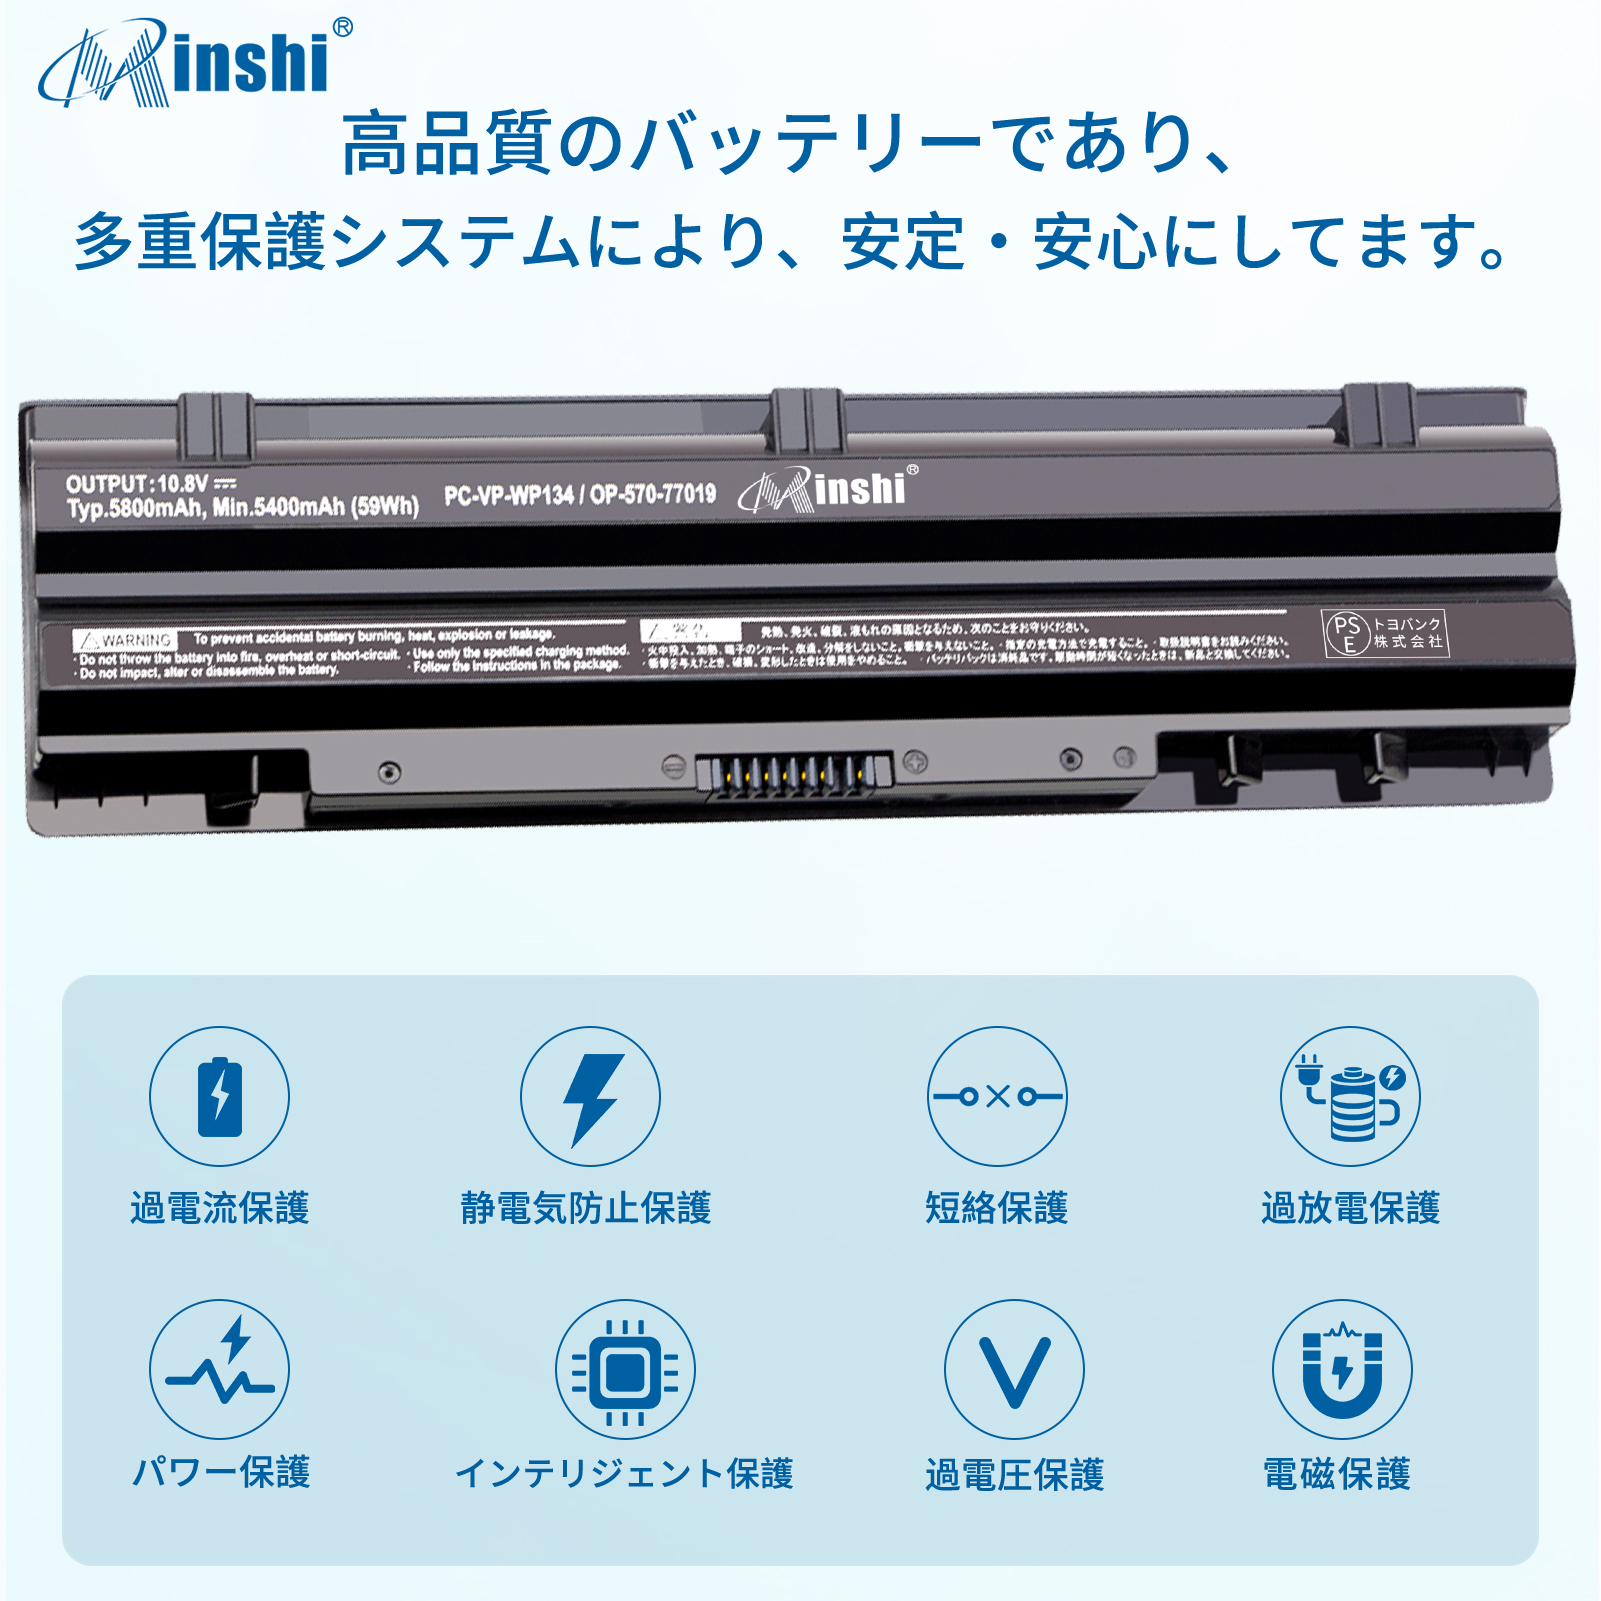  minshi NEC VK24L PC-VP-WP135 対応 互換バッテリー 2250 mAh  高品質交換用バッテリー